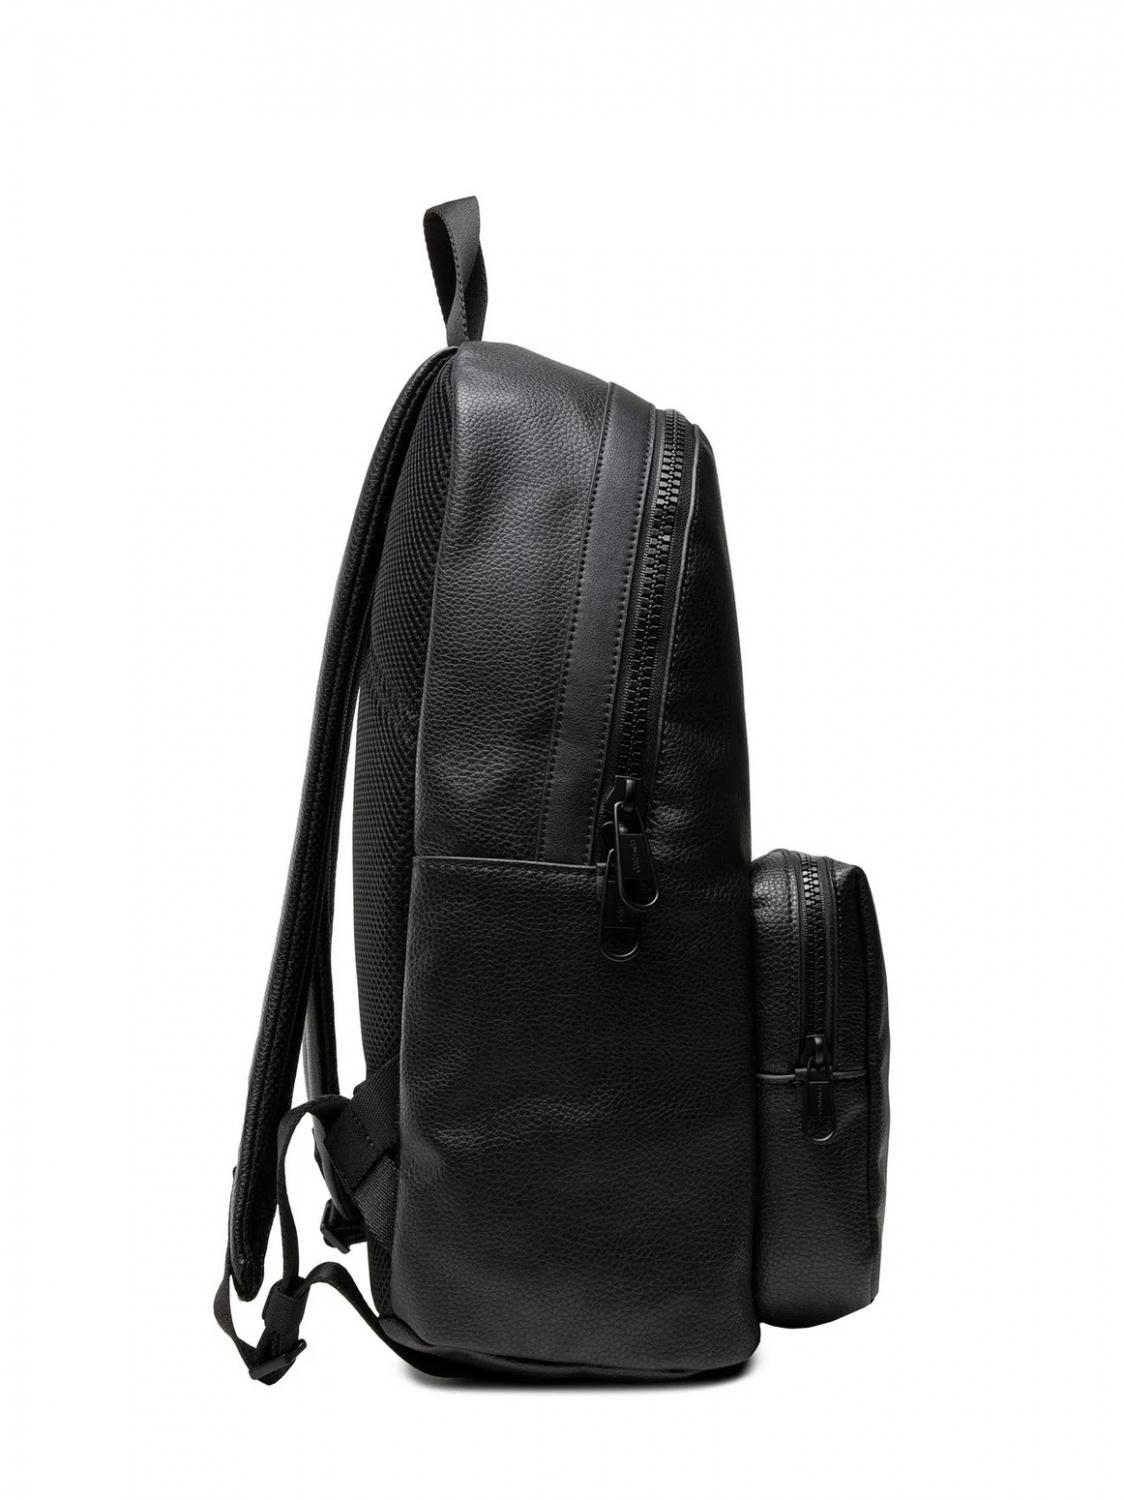 Calvin Klein Ck Campus 13 Laptop Backpack Ckblack - Buy At Outlet